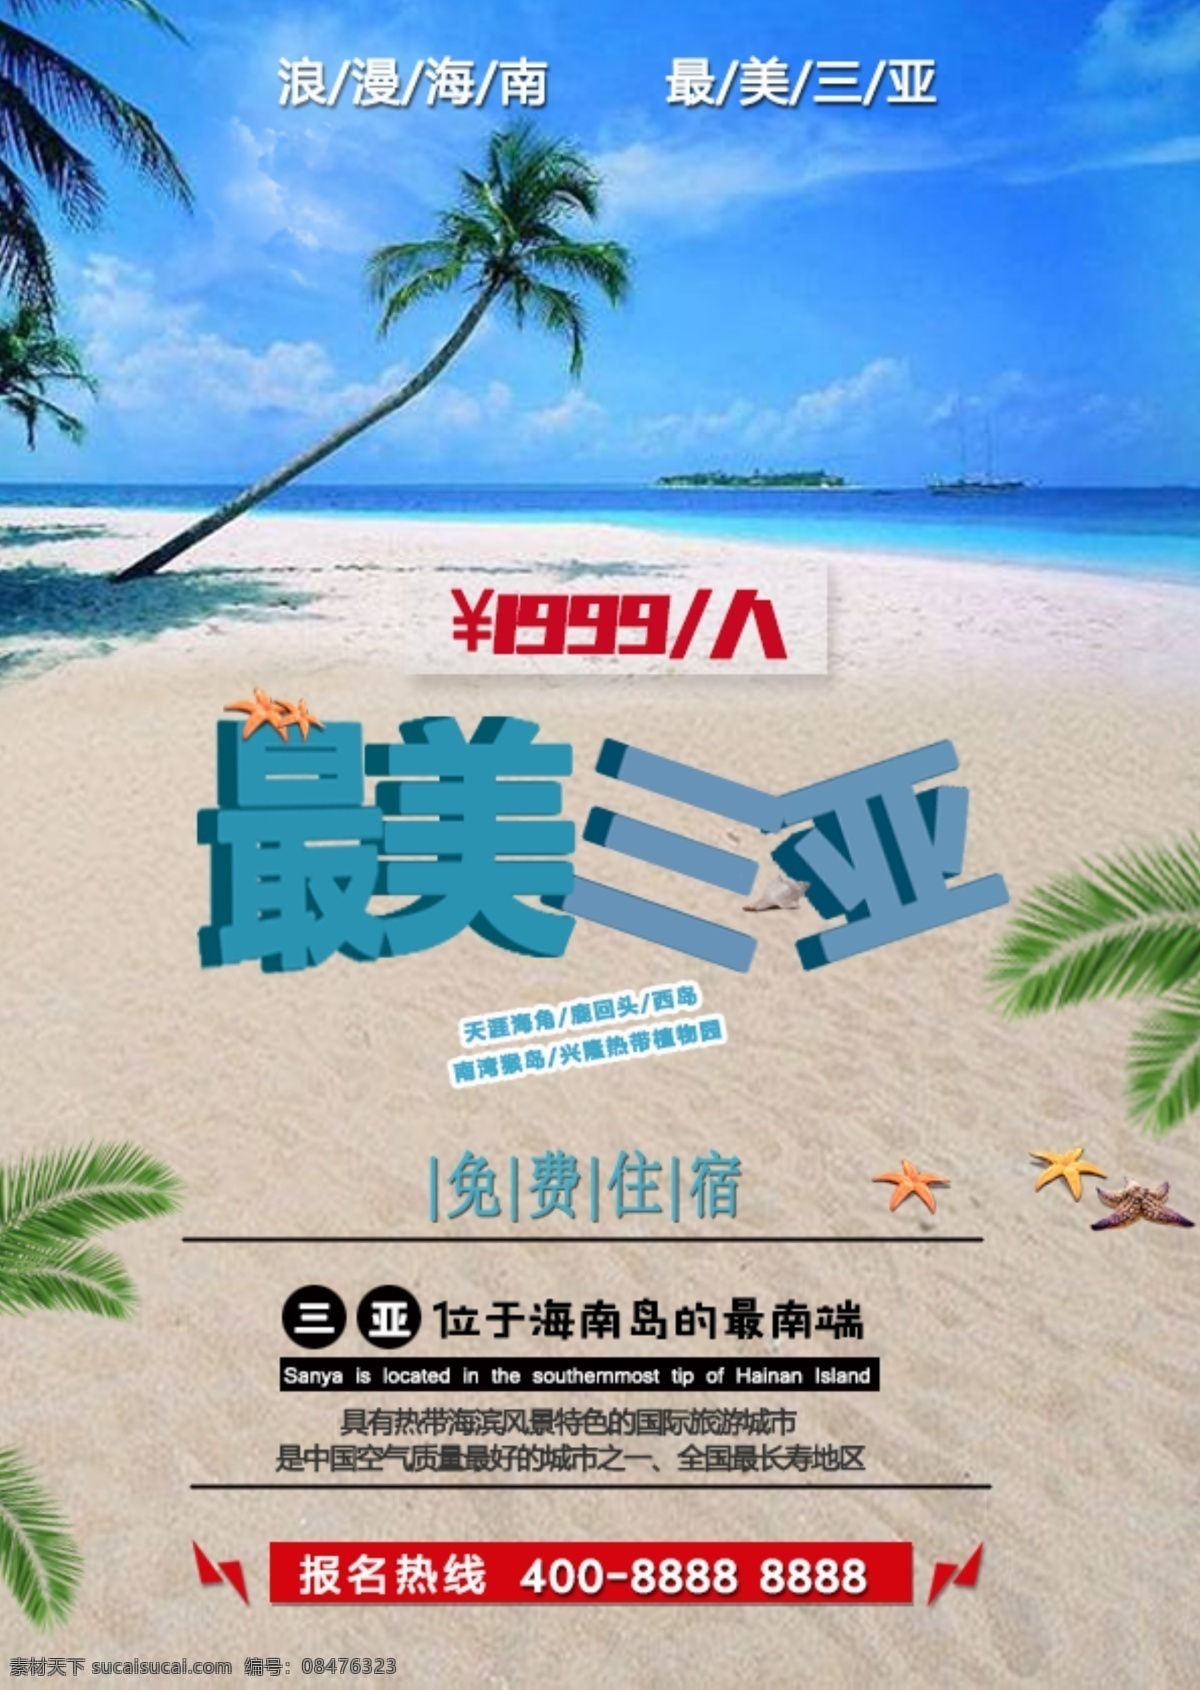 三亚 旅游出行 海报 旅游海报 促销 宣传 商业海报